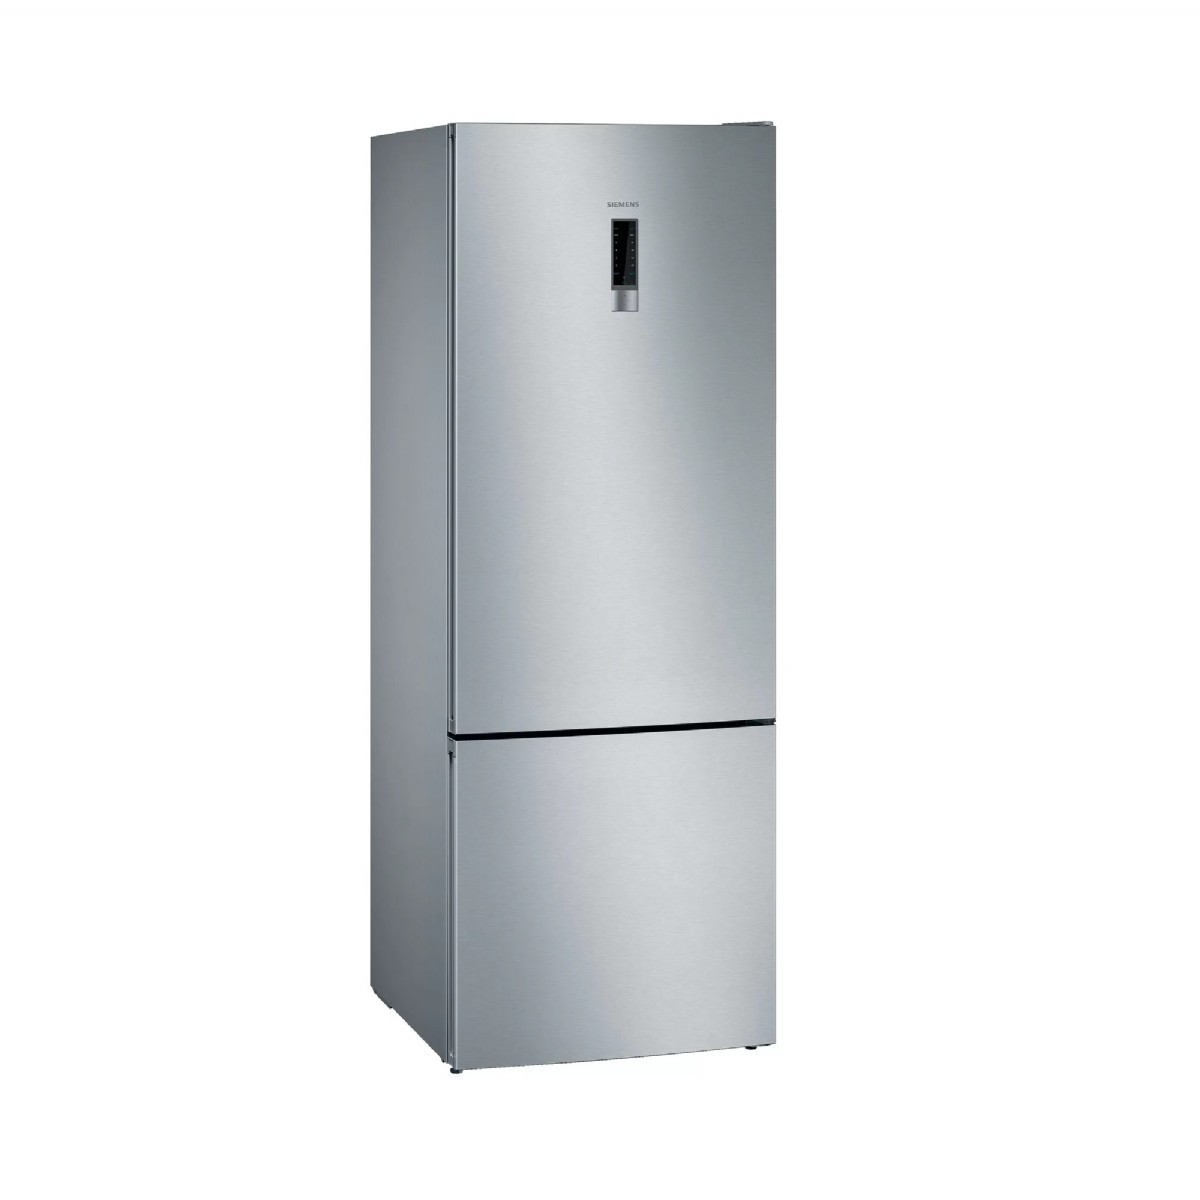 Buzdolabı | Siemens KG56NVIF0N Kombi No-Frost Buzdolabı | KG56NVIF0N | KG56NVIF0N, kg56nvıf0n, kg56nvif0n, Siemens KG56NVIF0N Kombi No-Frost Buzdolabı, Siemens KG56NVIF0N Buzdolabı, Siemens KG56NVIF0N No-Frost Buzdolabı | 